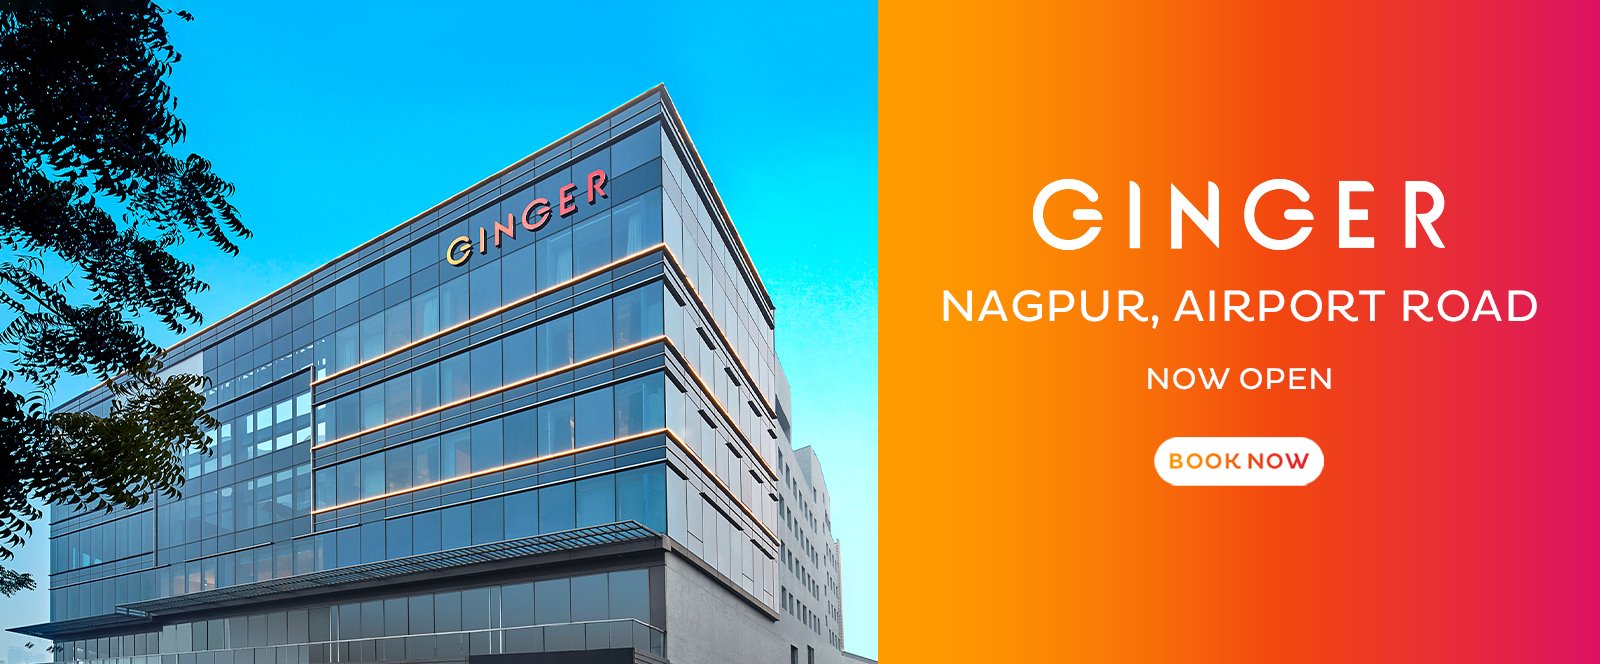 Ginger Nagpur Airport Road